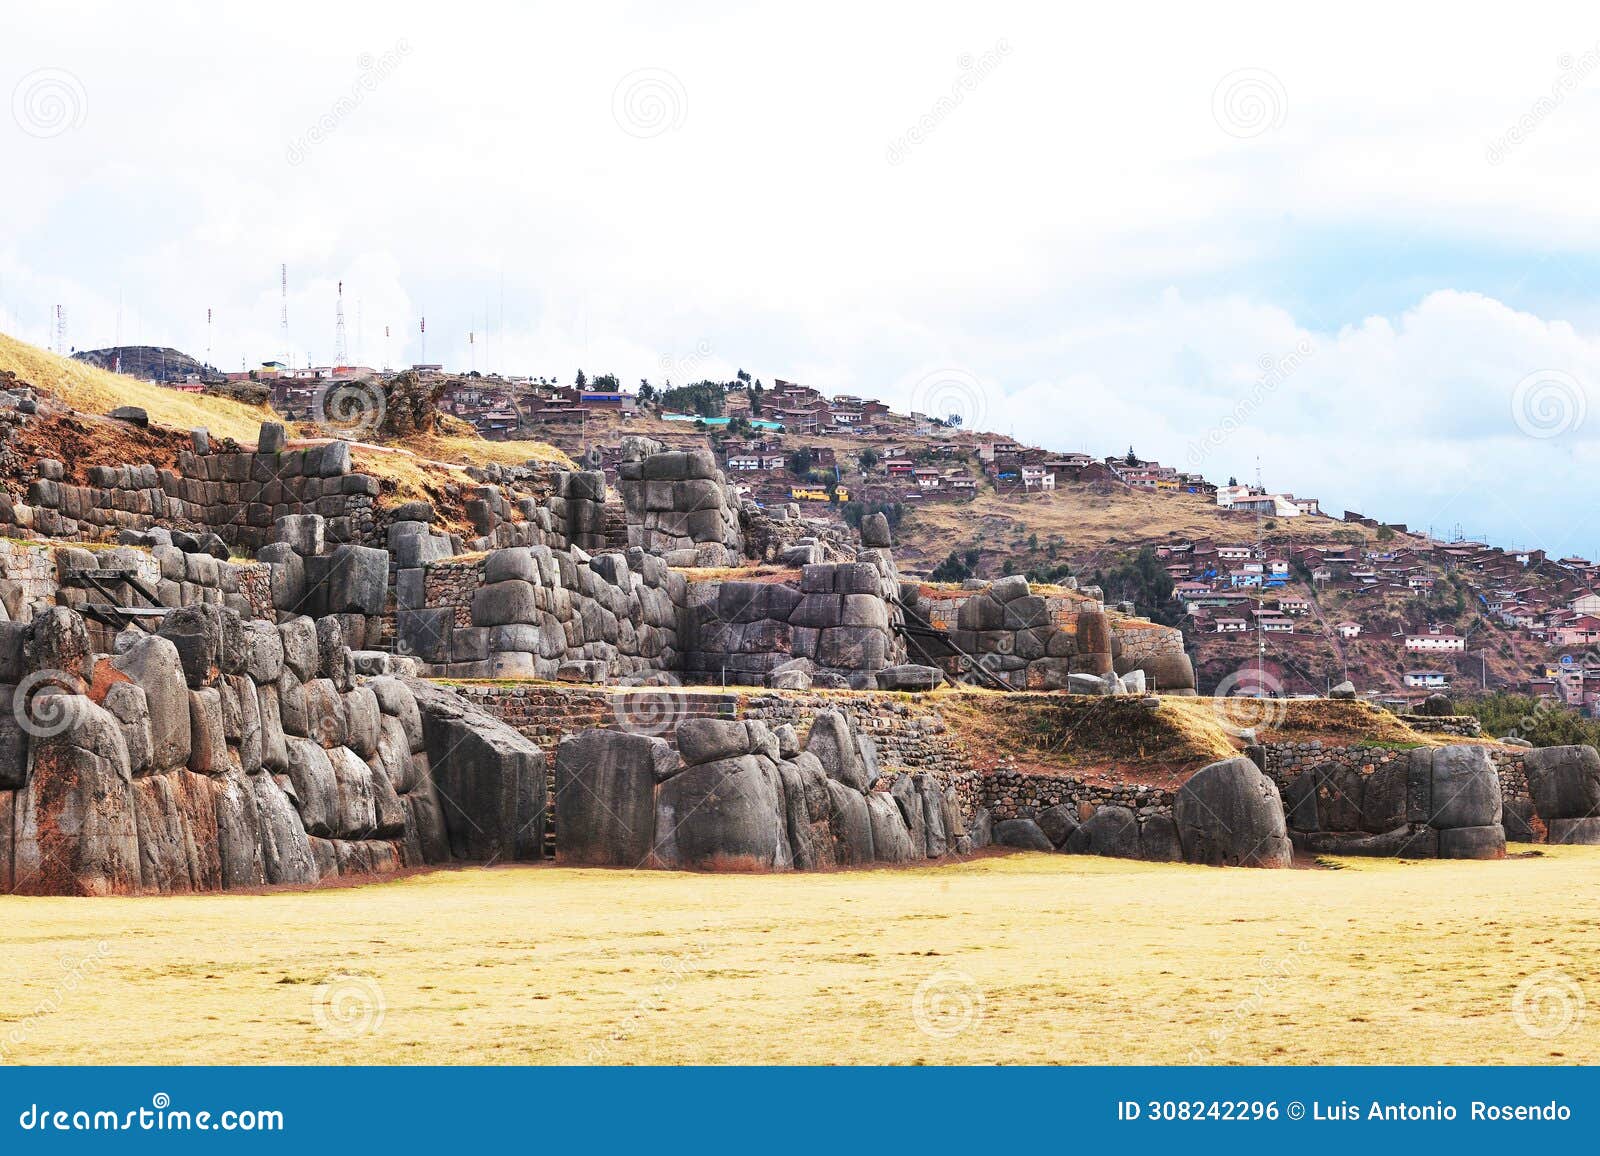 sacsayhuaman, ruinas incas en cusco, peru